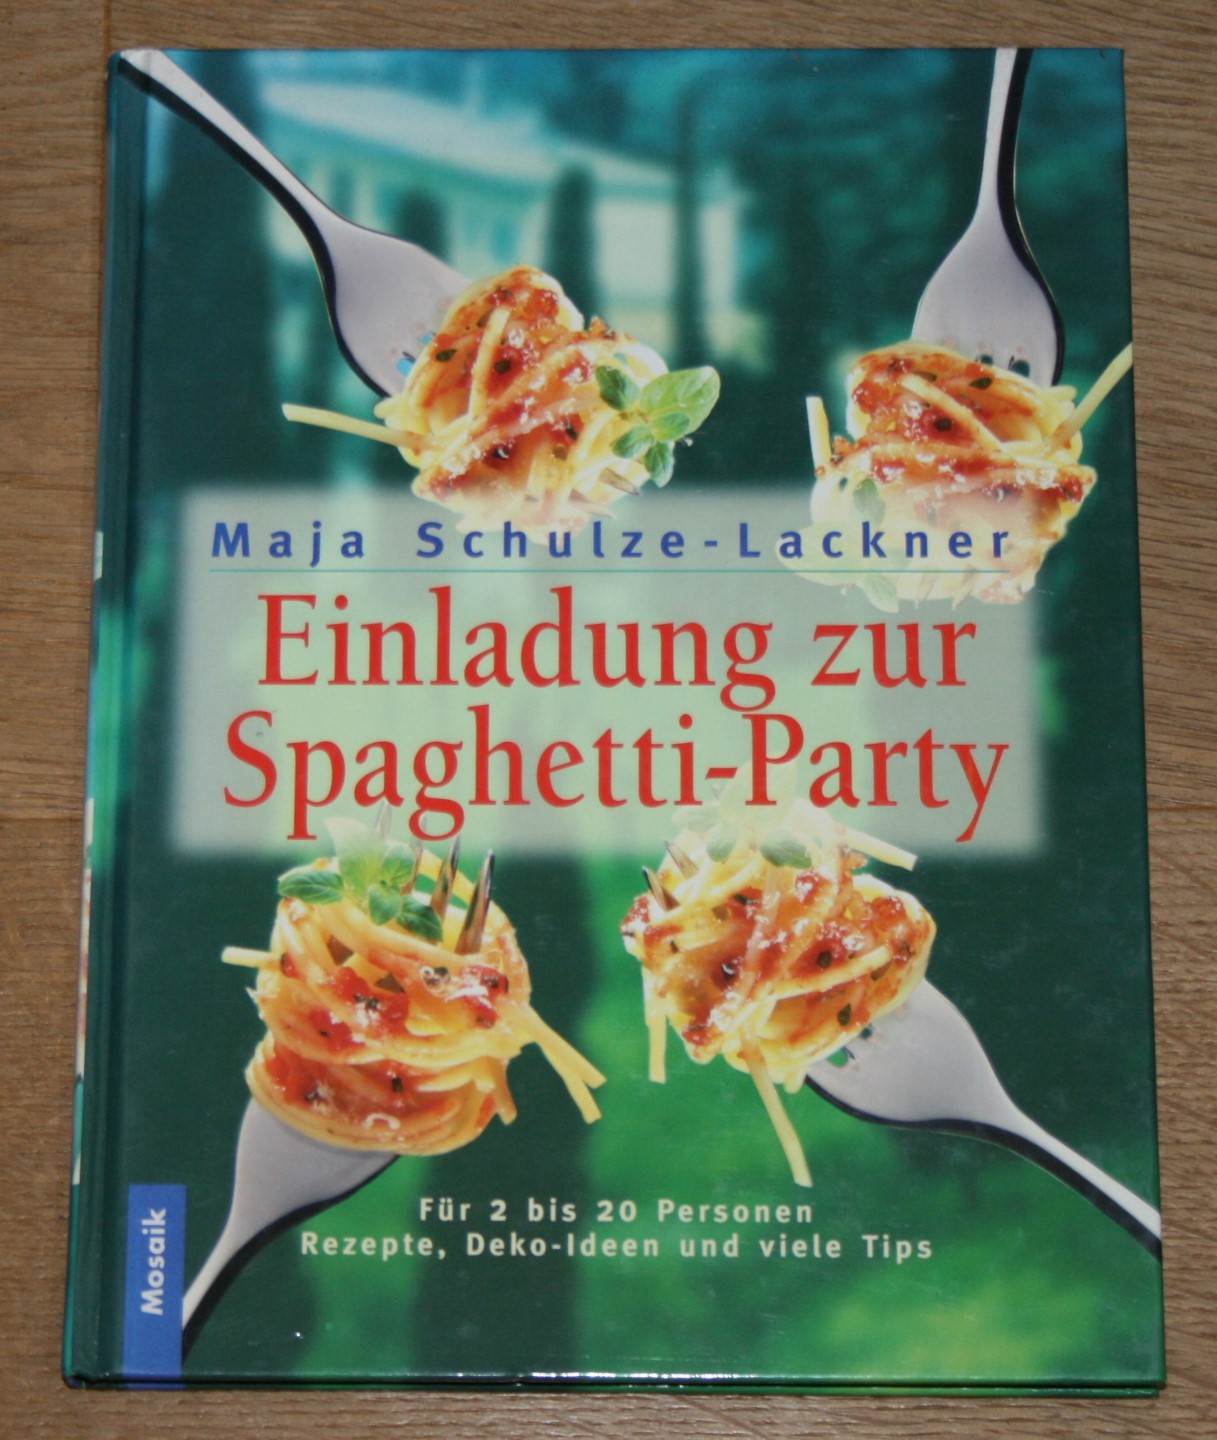 Einladung zur Spaghetti-Party. Für 2 bis 20 Personen. Rezepte, Deko-Ideen und viele Tips. - Schulze-Lackner, Maja und Gabriele Redden (Bearbeitung und Redaktion)